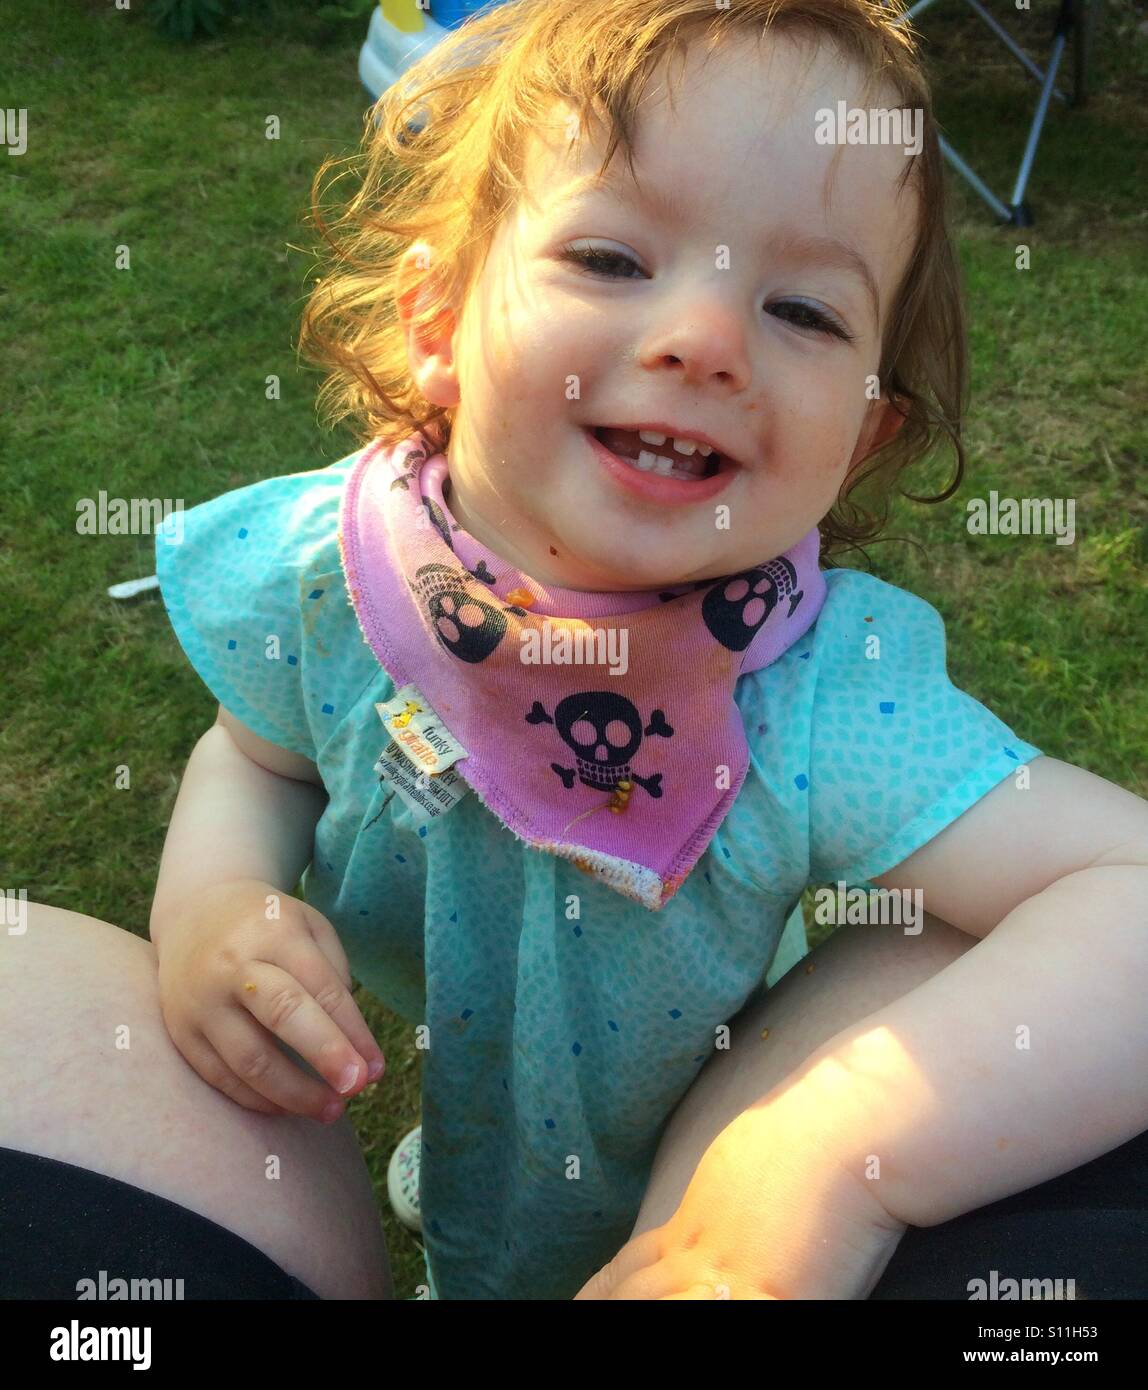 Glücklich, aber schmutzig Kleinkind Mädchen an einem sonnigen Tag im Garten. Sie lächelt glücklich. Stockfoto